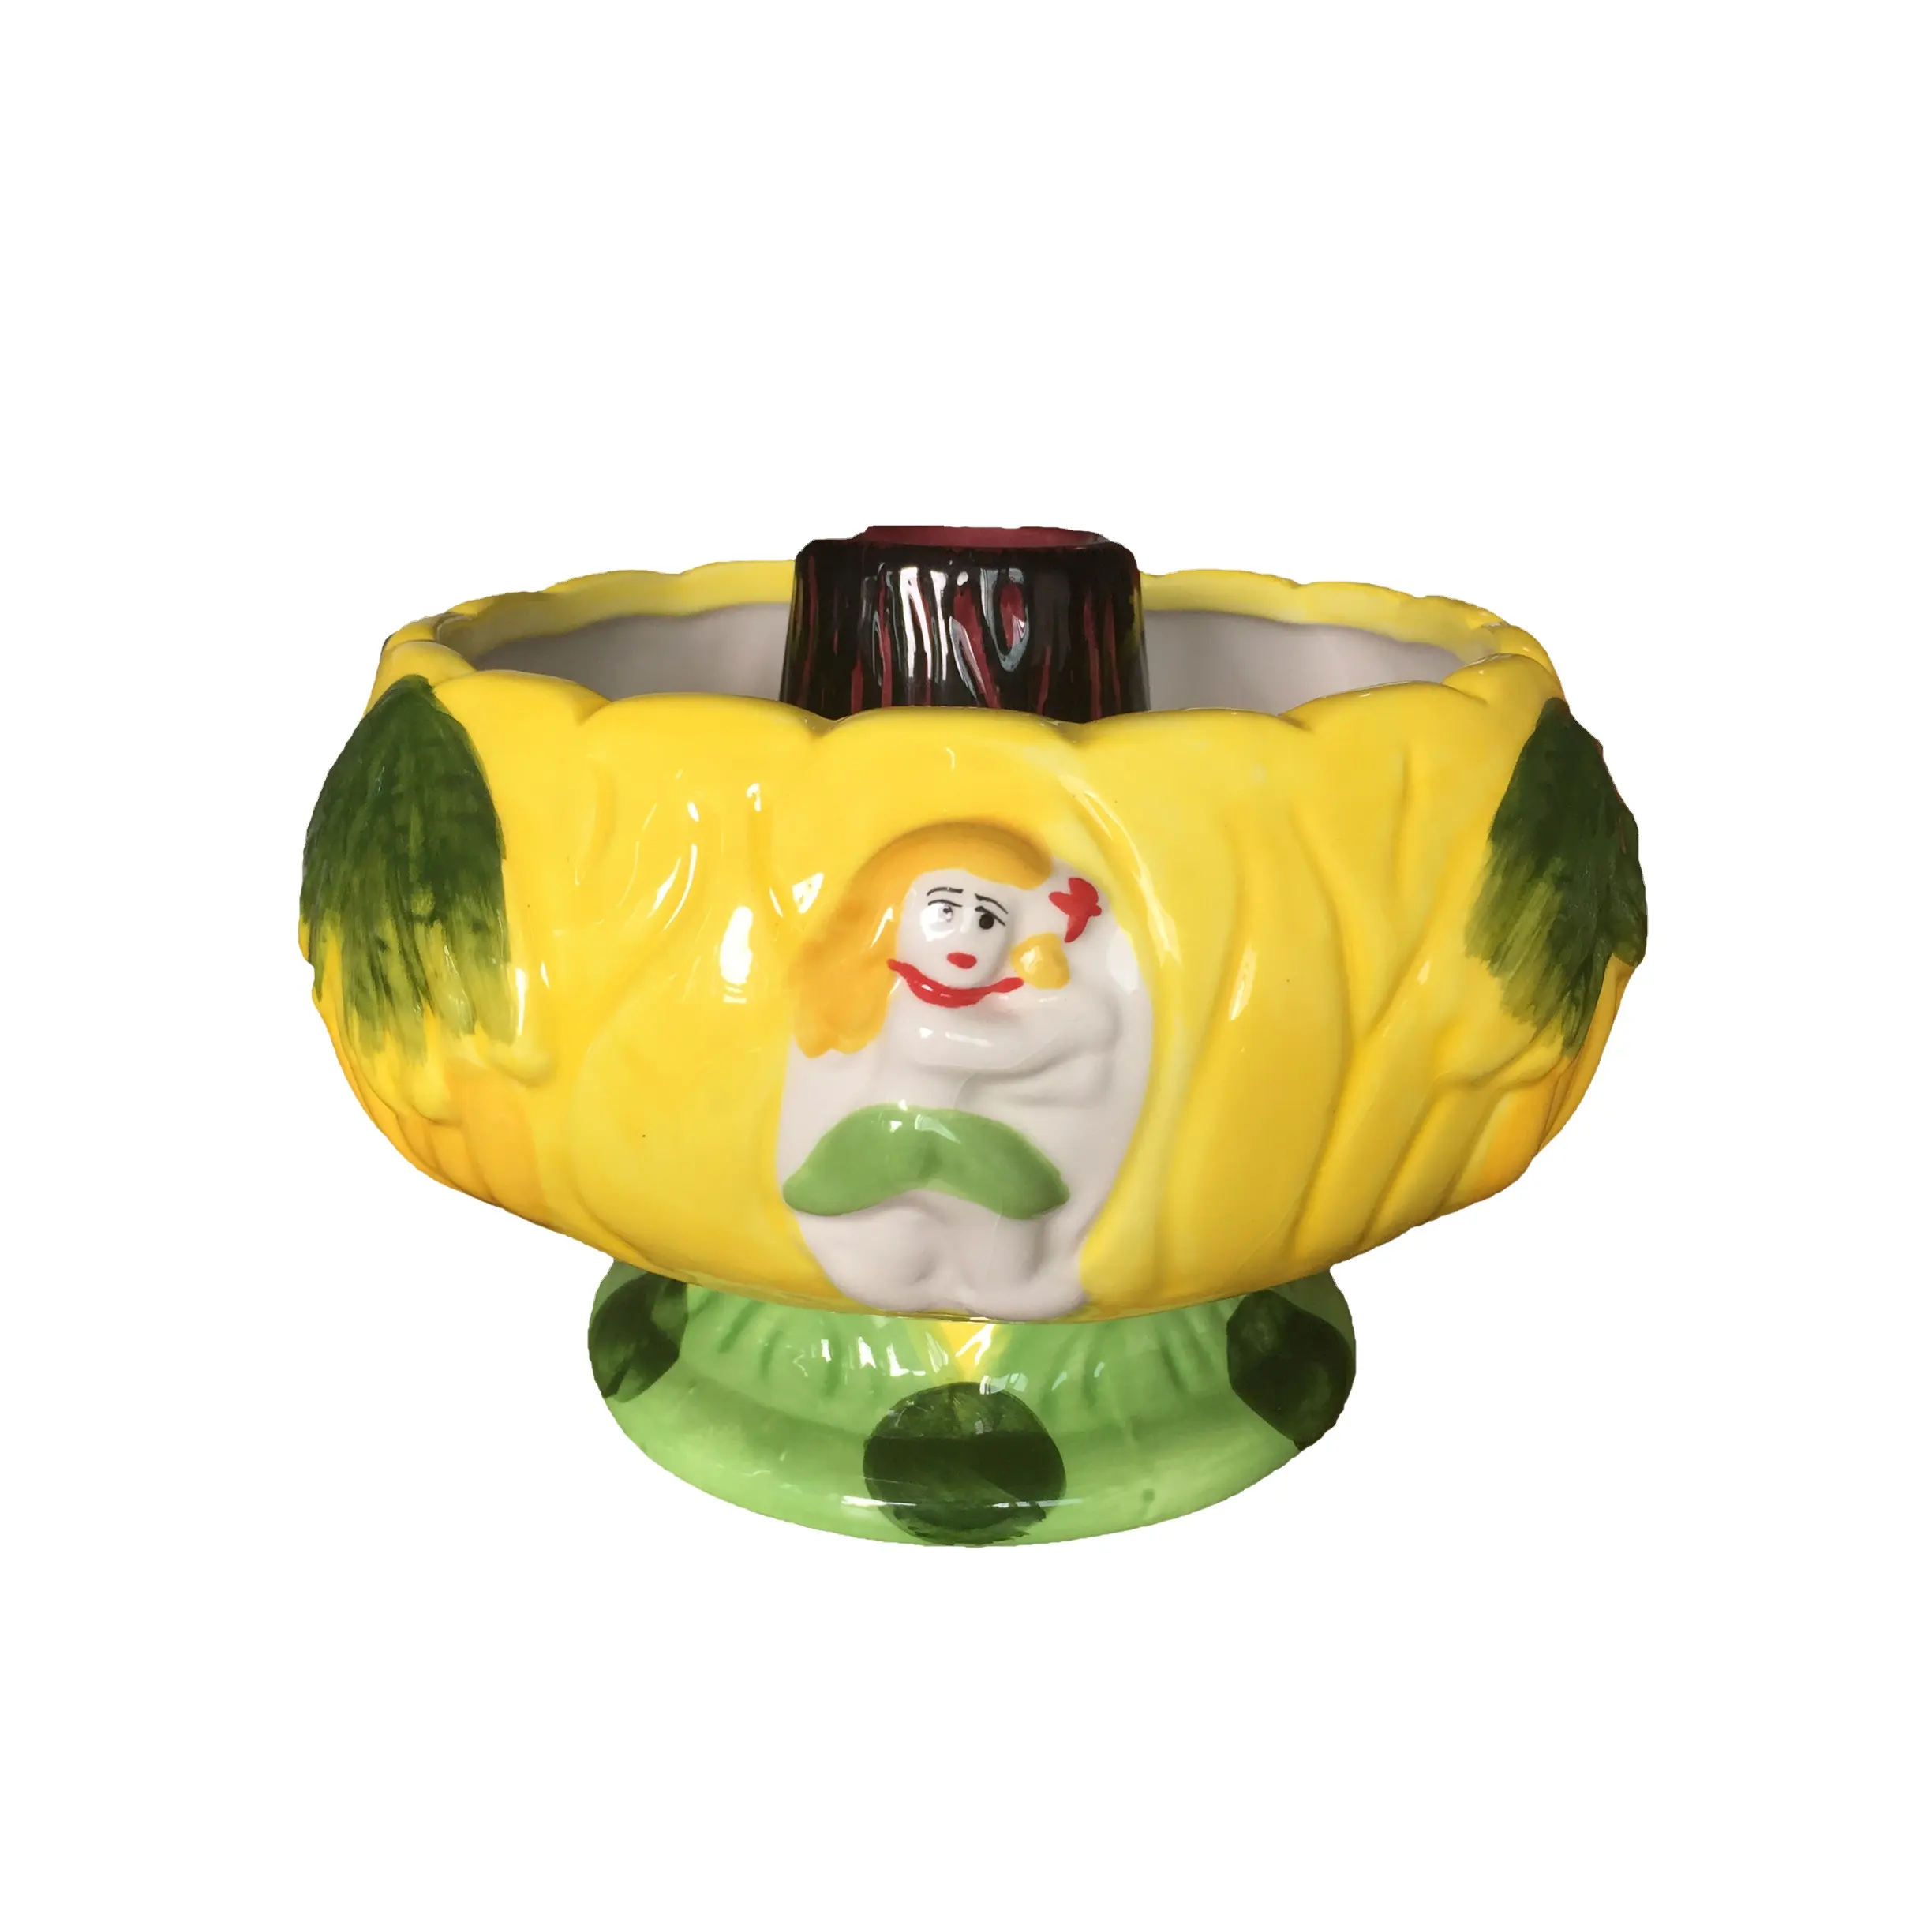 Benutzer definierte Keramik Cocktail Vulkan Schüssel dekorative hochwertige Shake Schüssel Großhandel Sommer Bar Zubehör Tiki Bowl